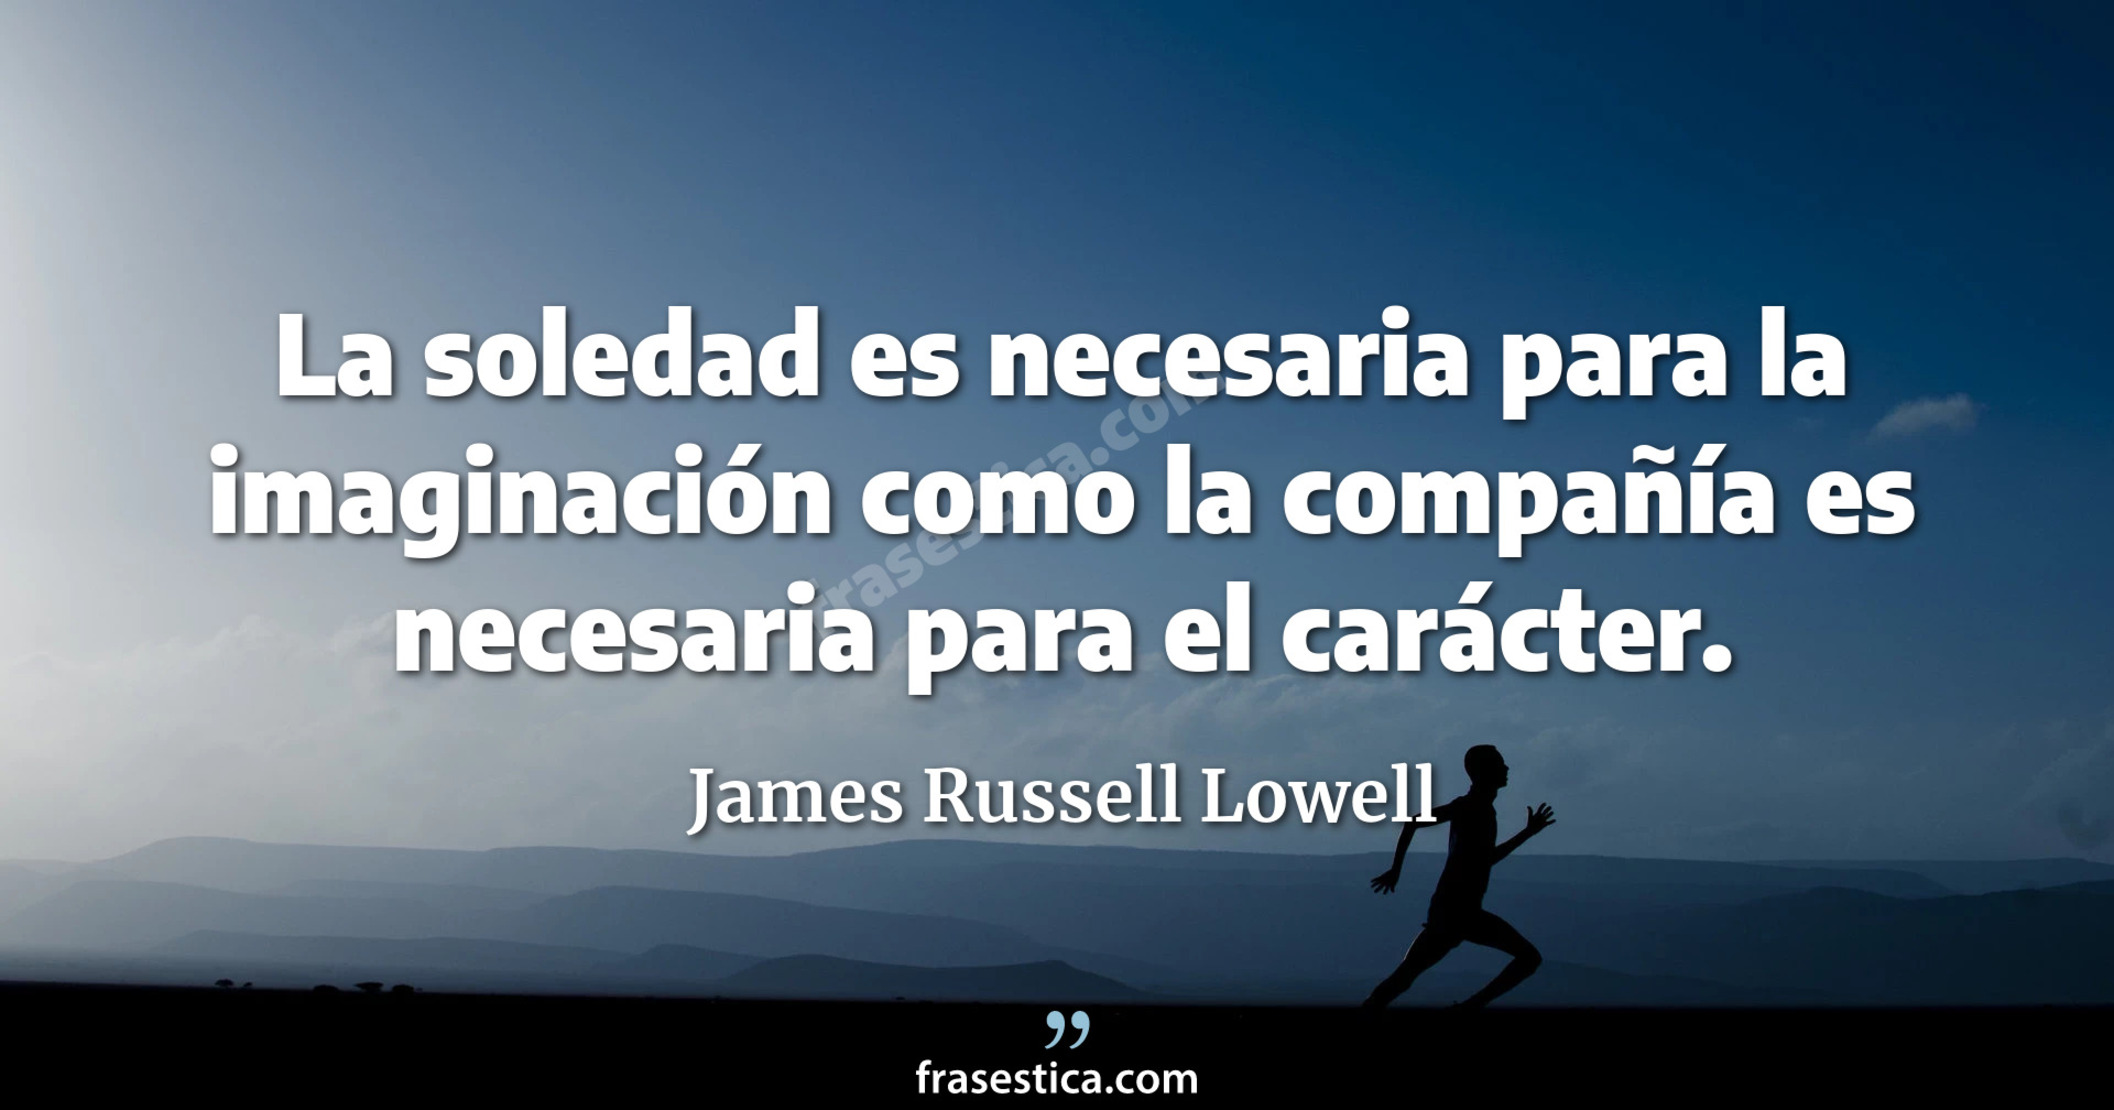 La soledad es necesaria para la imaginación como la compañía es necesaria para el carácter. - James Russell Lowell